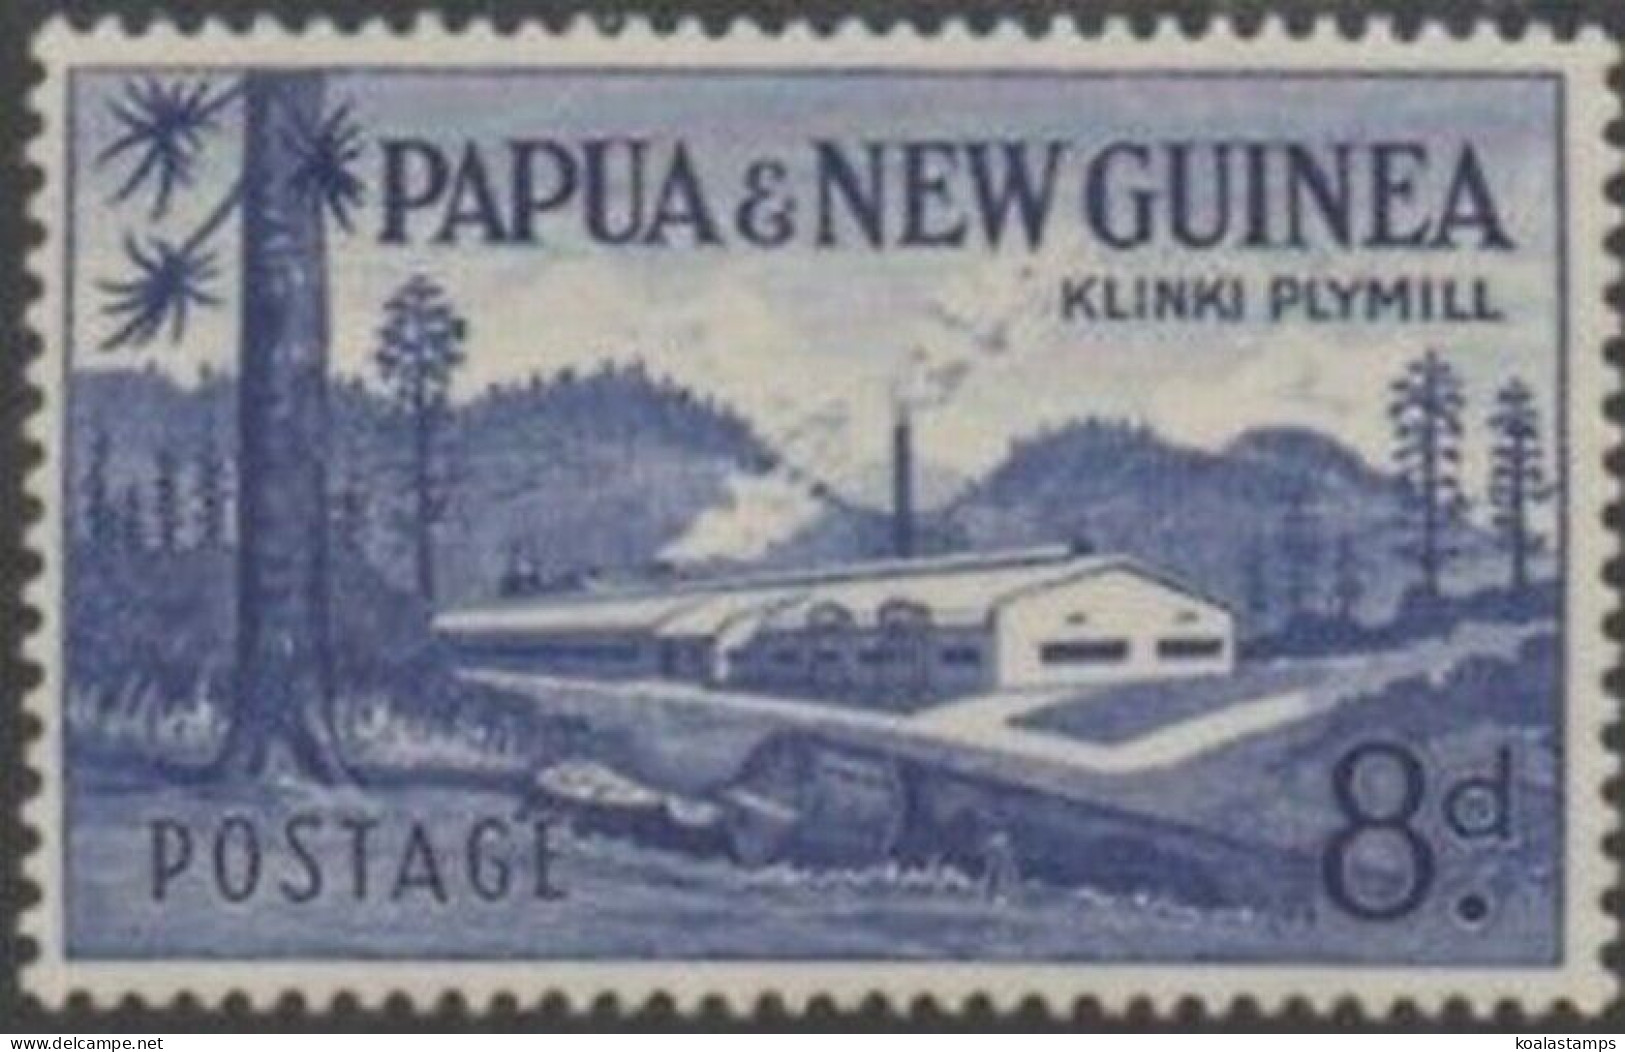 Papua New Guinea 1960 SG21 8d Klinki Plymill MNH - Papouasie-Nouvelle-Guinée